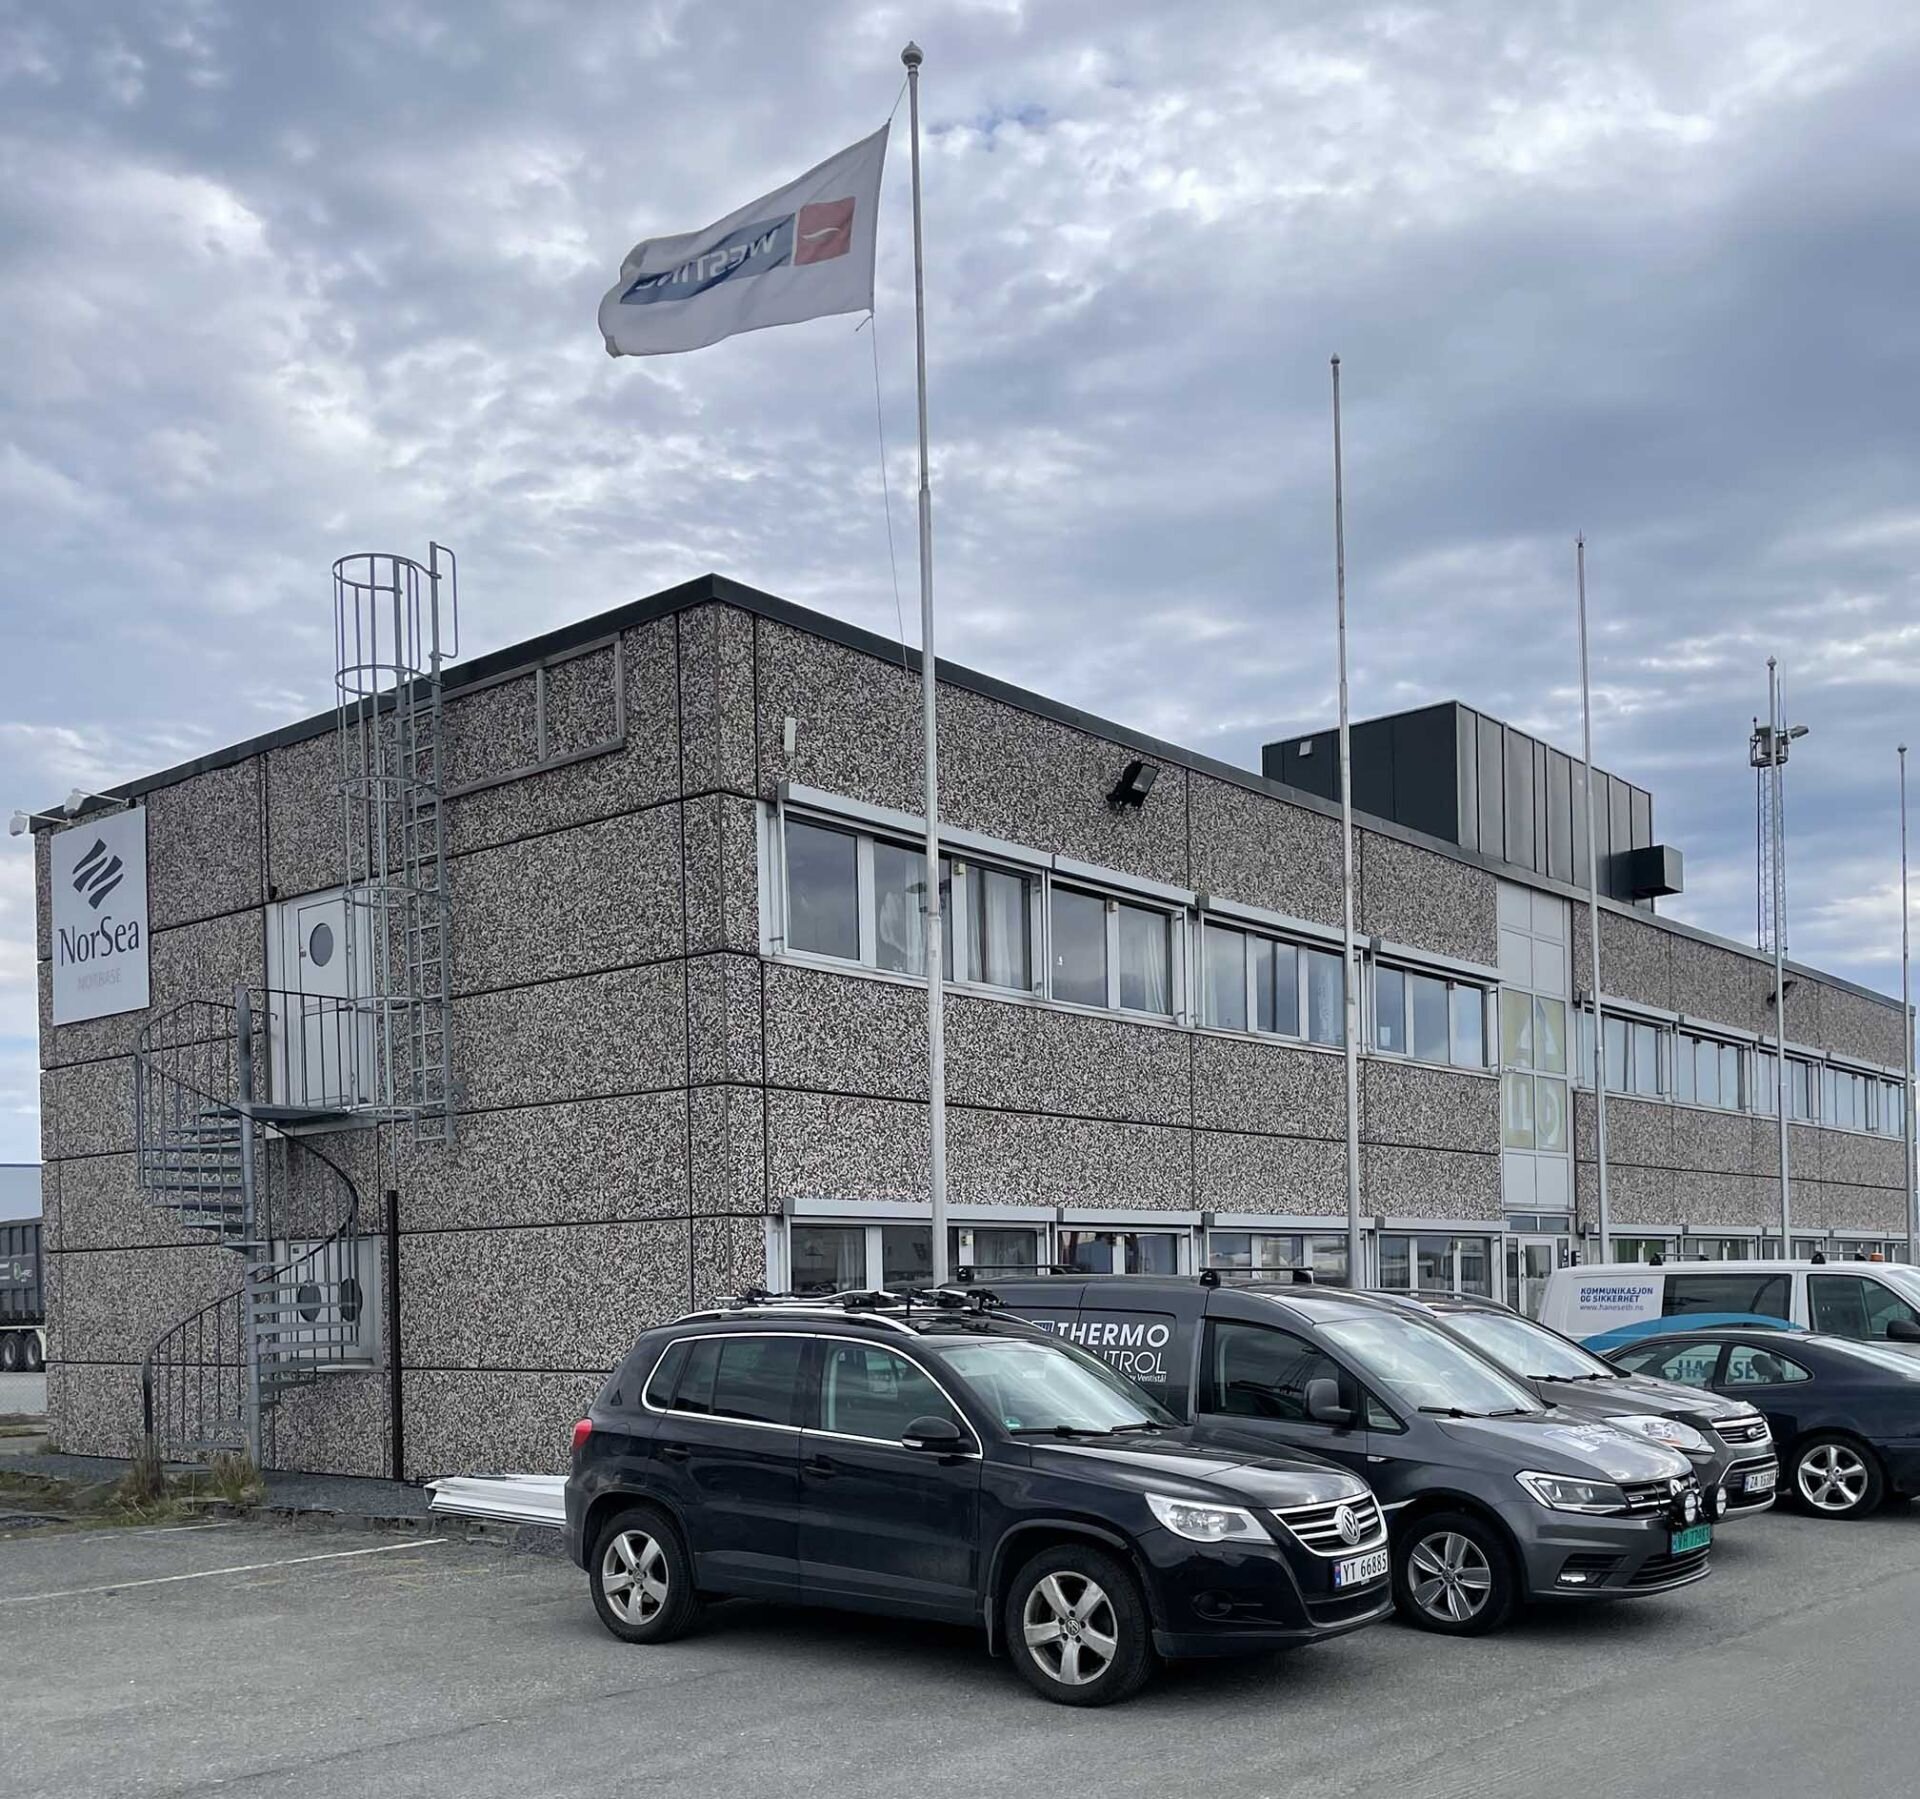 Certex Norway Harstad department